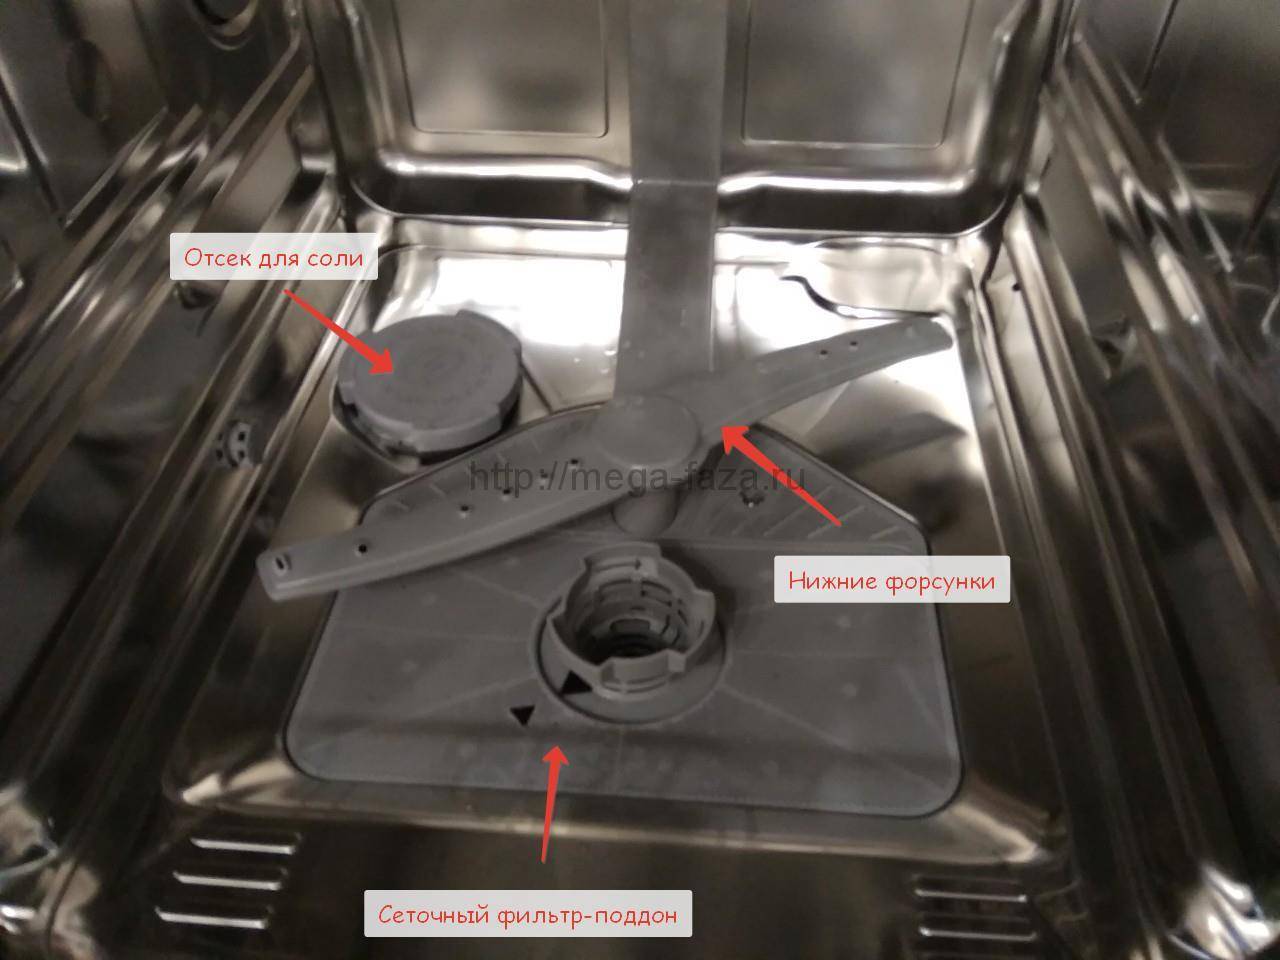 Почему в посудомоечной машине остается пена на дне или течет из нее